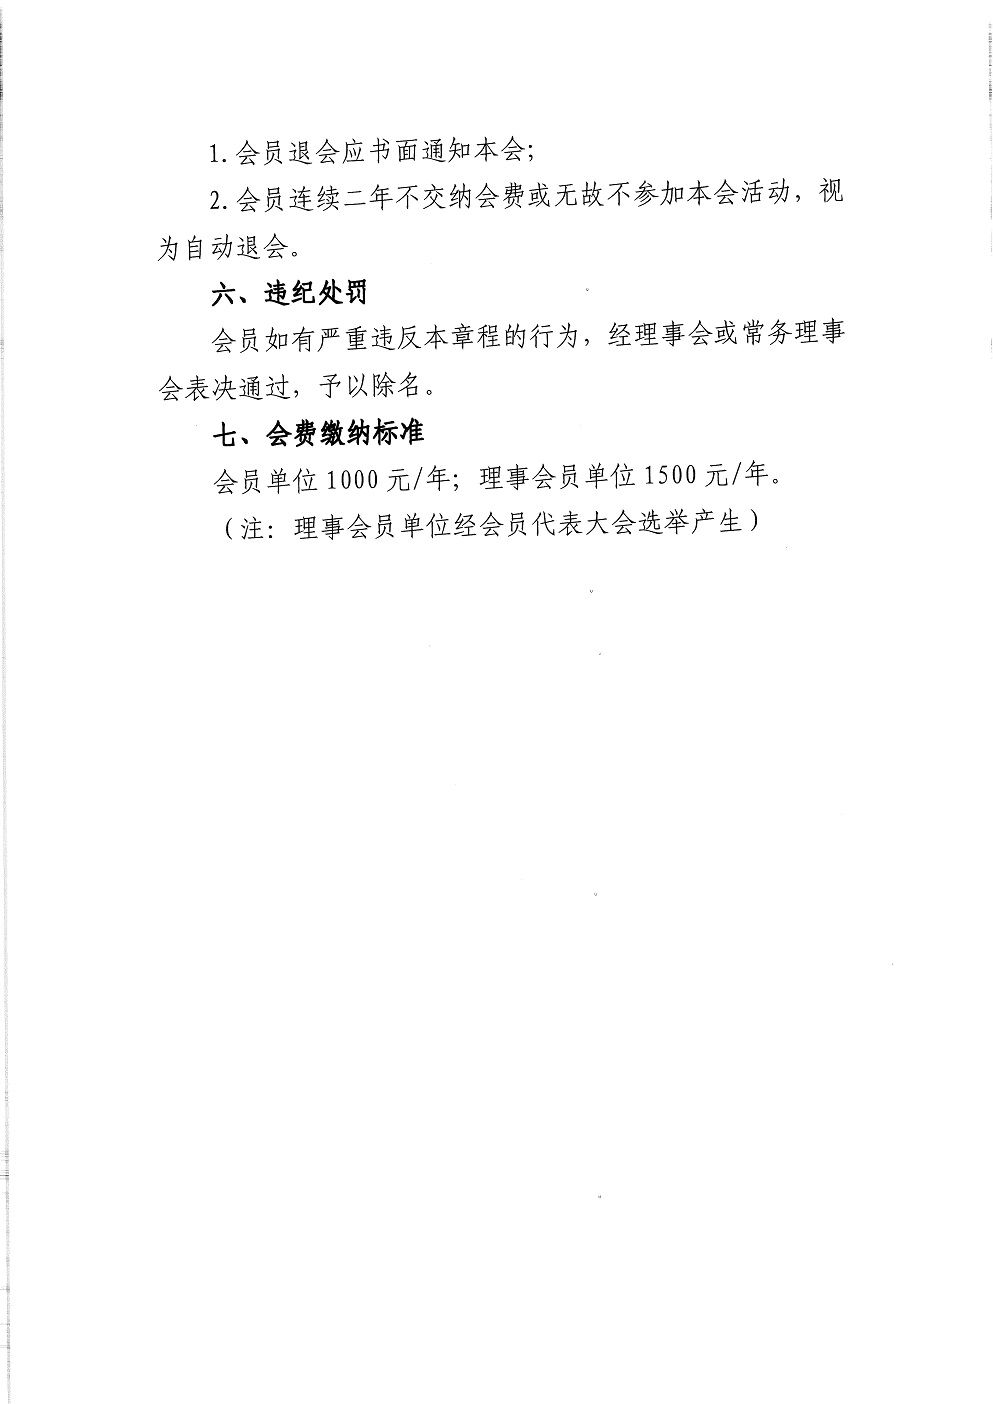 中教审通[2021]9号—中国教育审计学会关于发展新会员的通知_页面_4.jpg